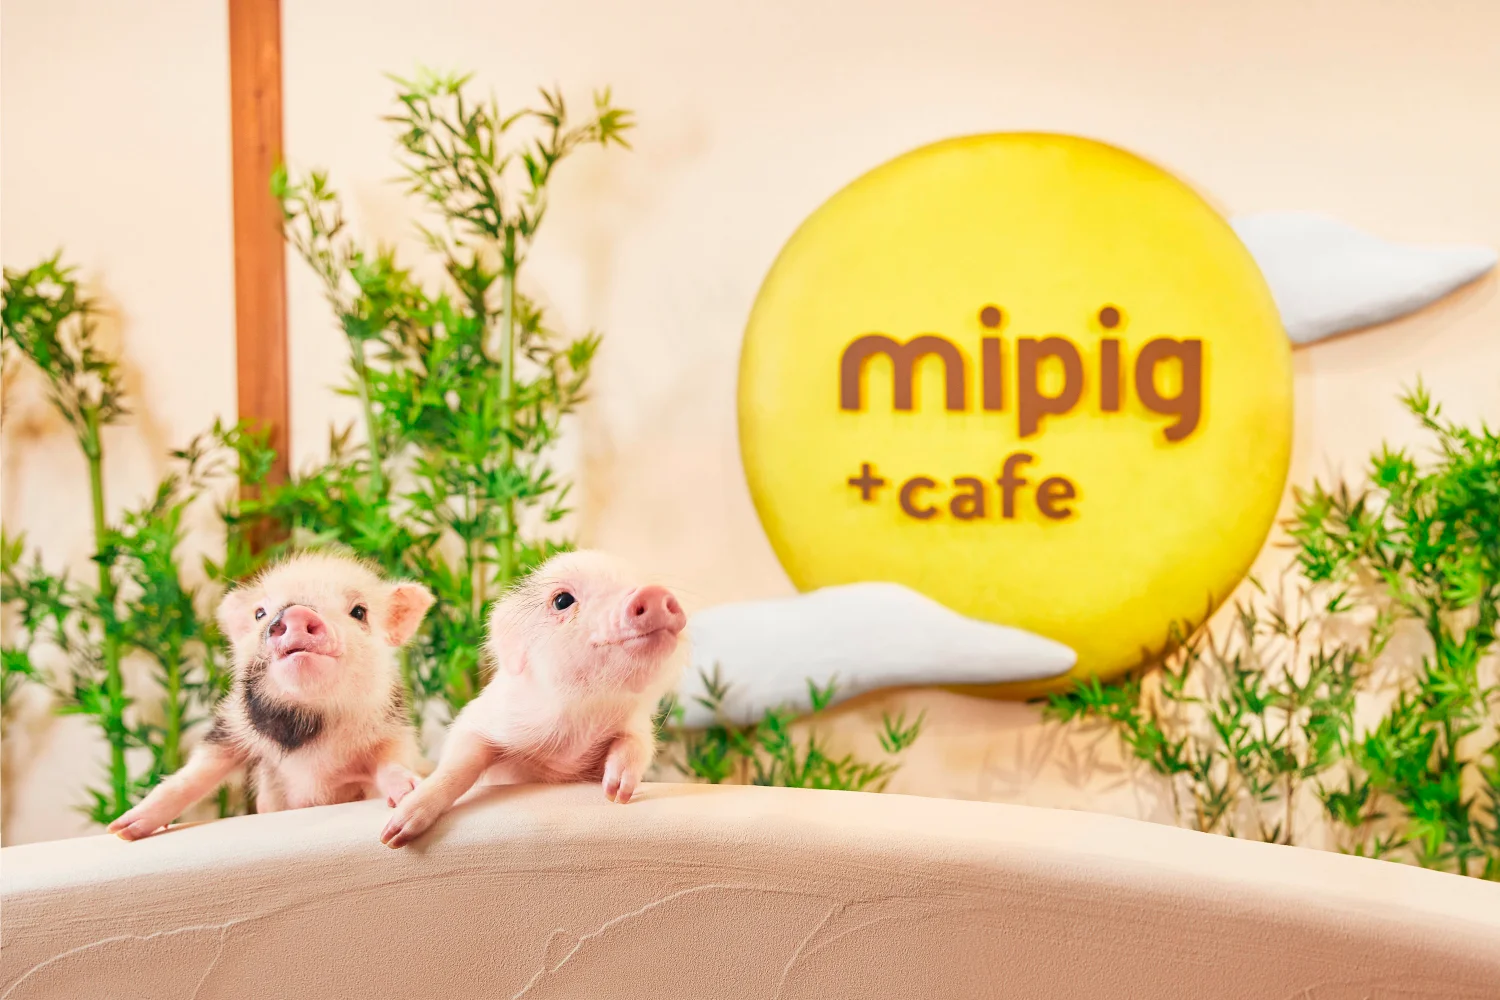 Book Mini Pig Cafe in Osaka